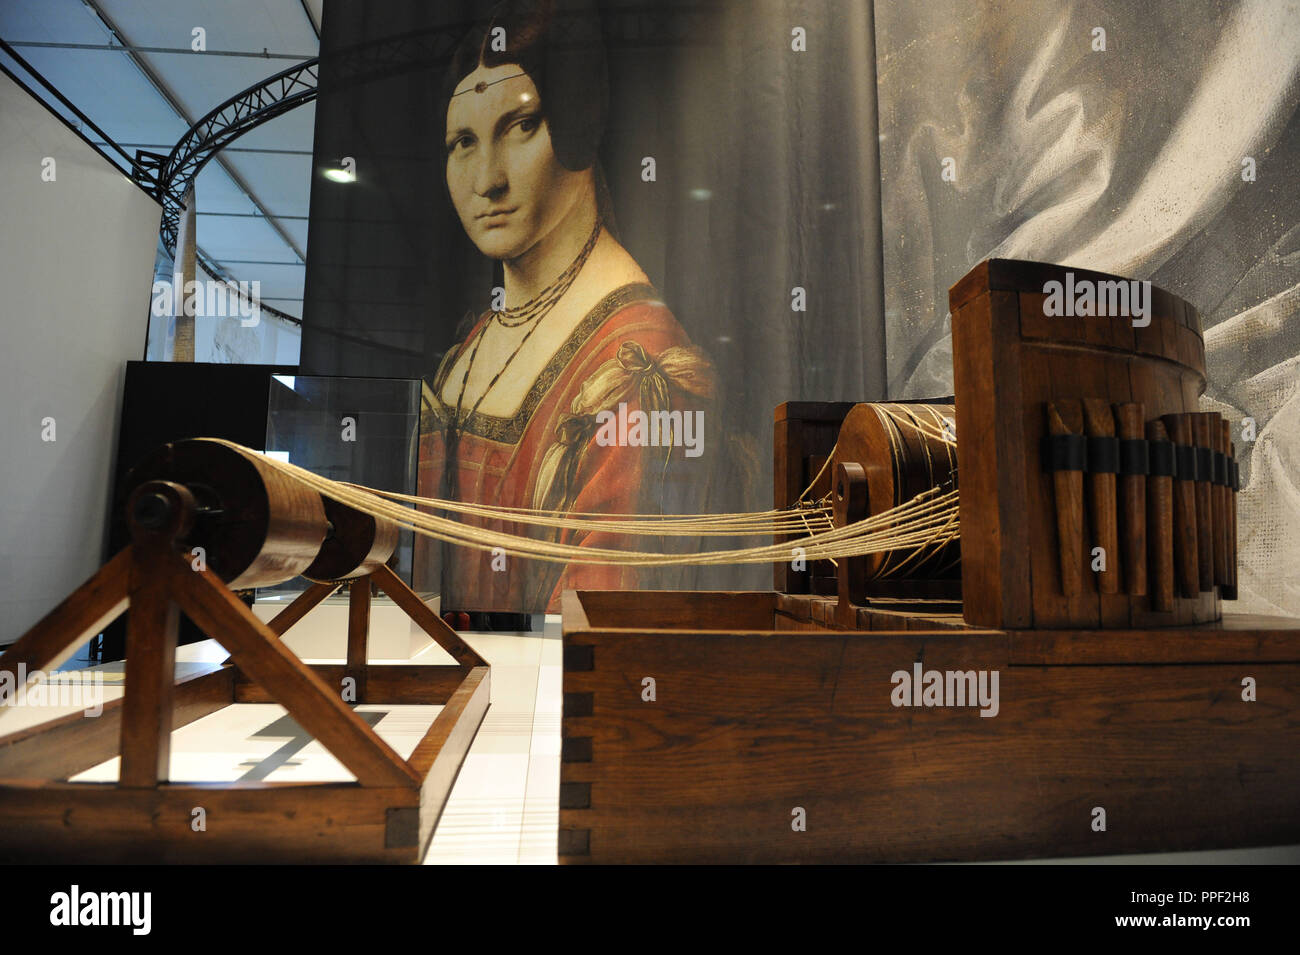 Exposition spéciale 'Leonardo da Vinci' dans le Deutsches Museum de Munich, Allemagne Banque D'Images